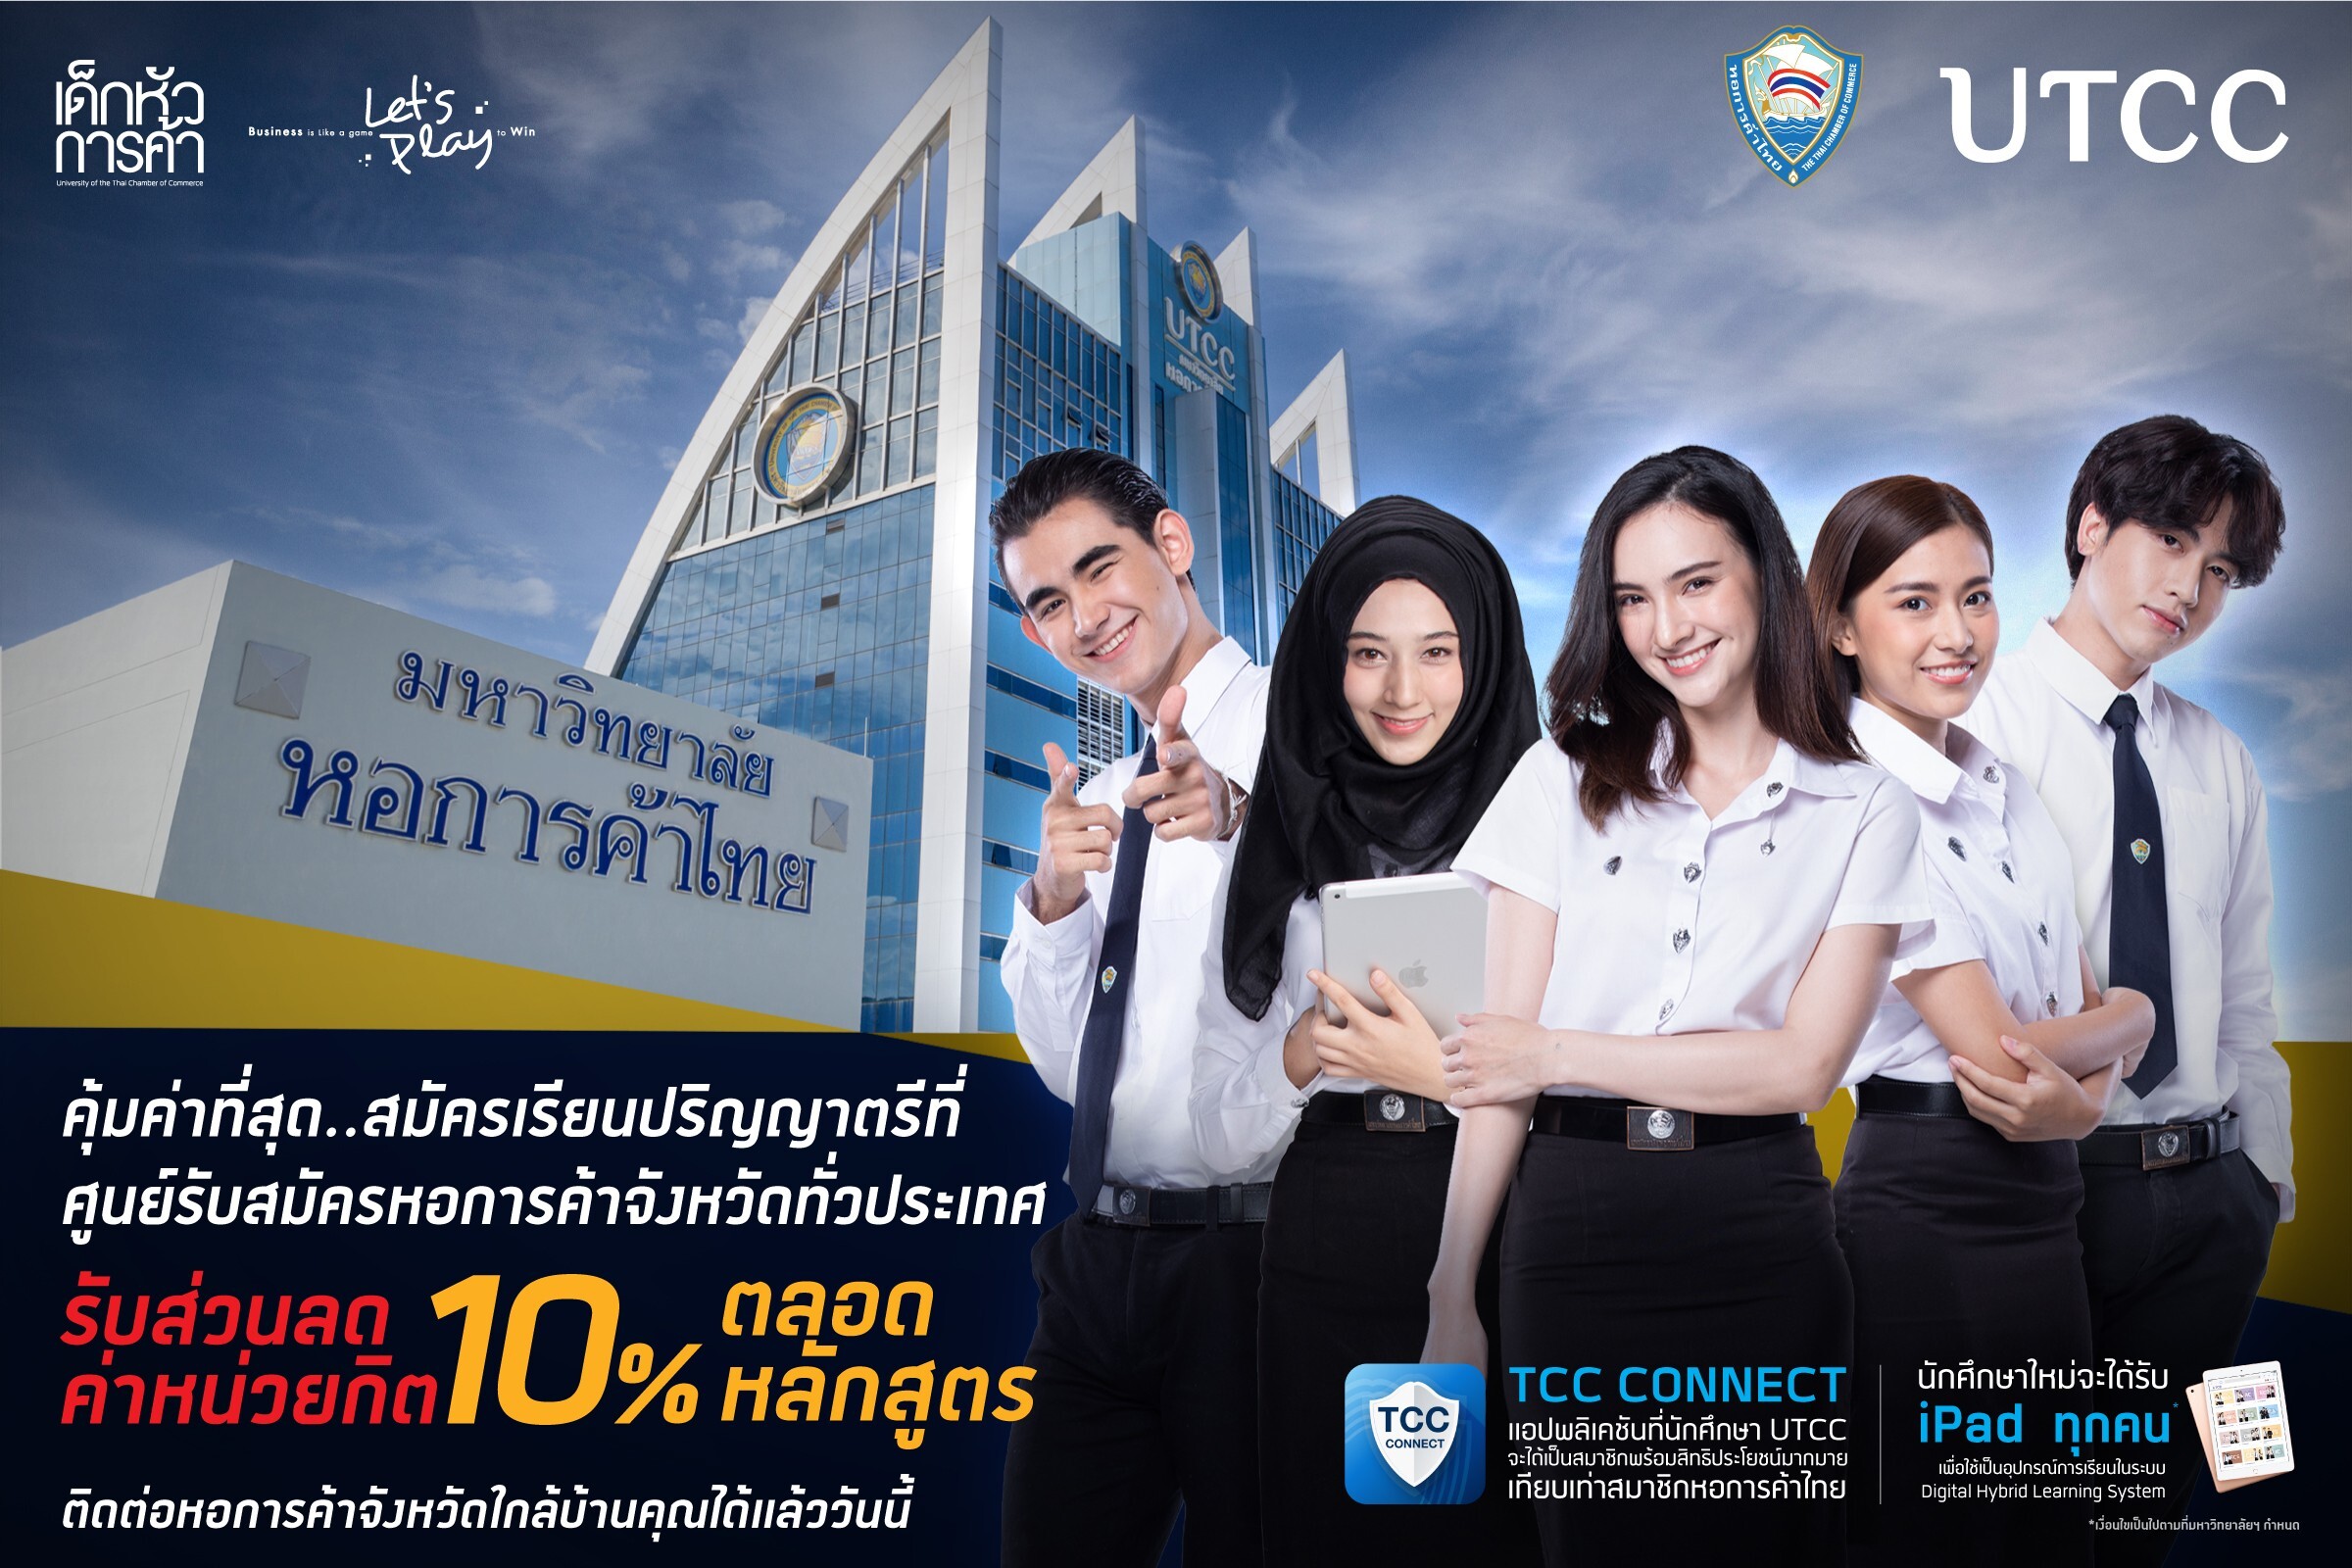 มหาวิทยาลัยหอการค้าไทย UTCC เปิดรับสมัครนักศึกษาใหม่ผ่านหอการค้าจังหวัดทั่วประเทศ